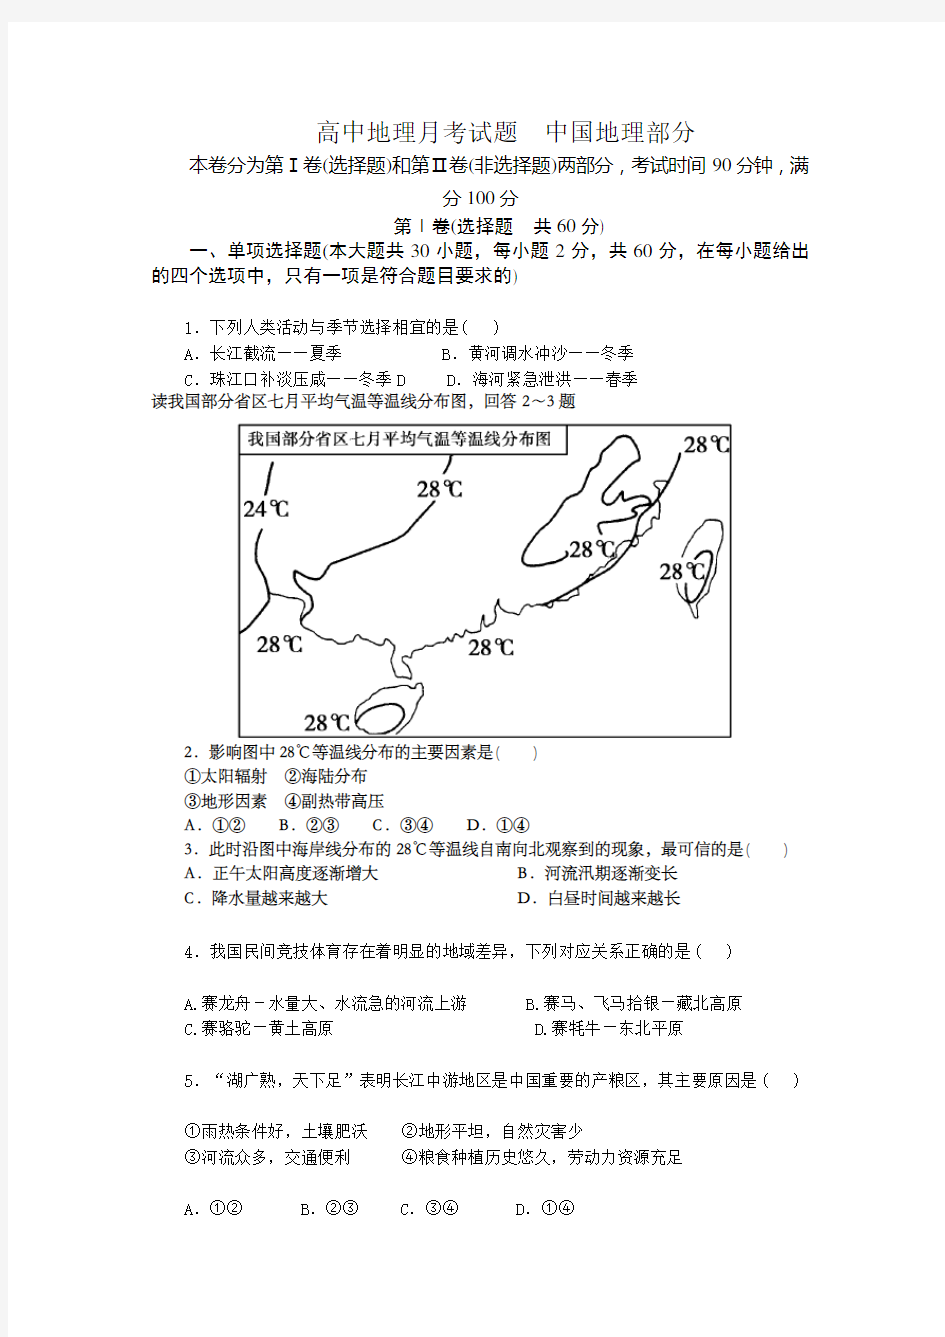 (完整版)中国地理测试题